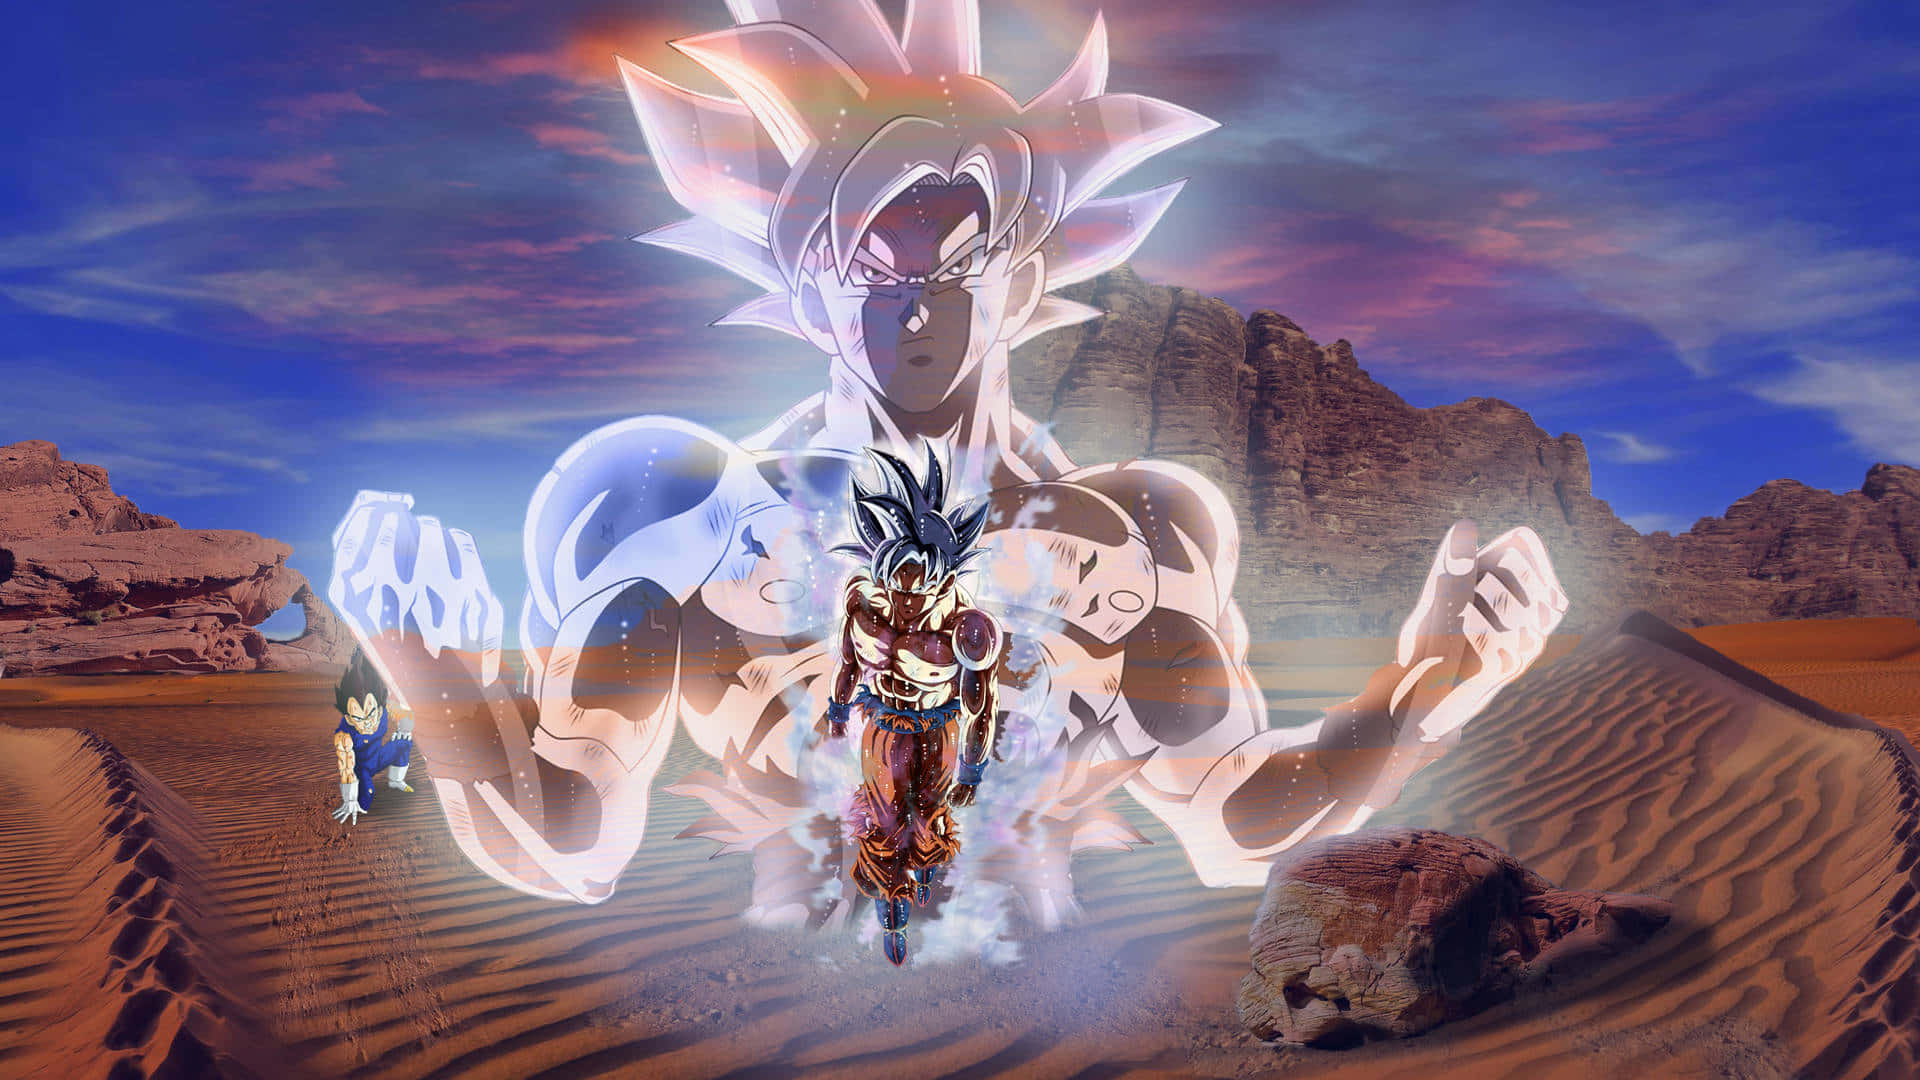 "Goku utilizing Ultra Instinct to its fullest!"